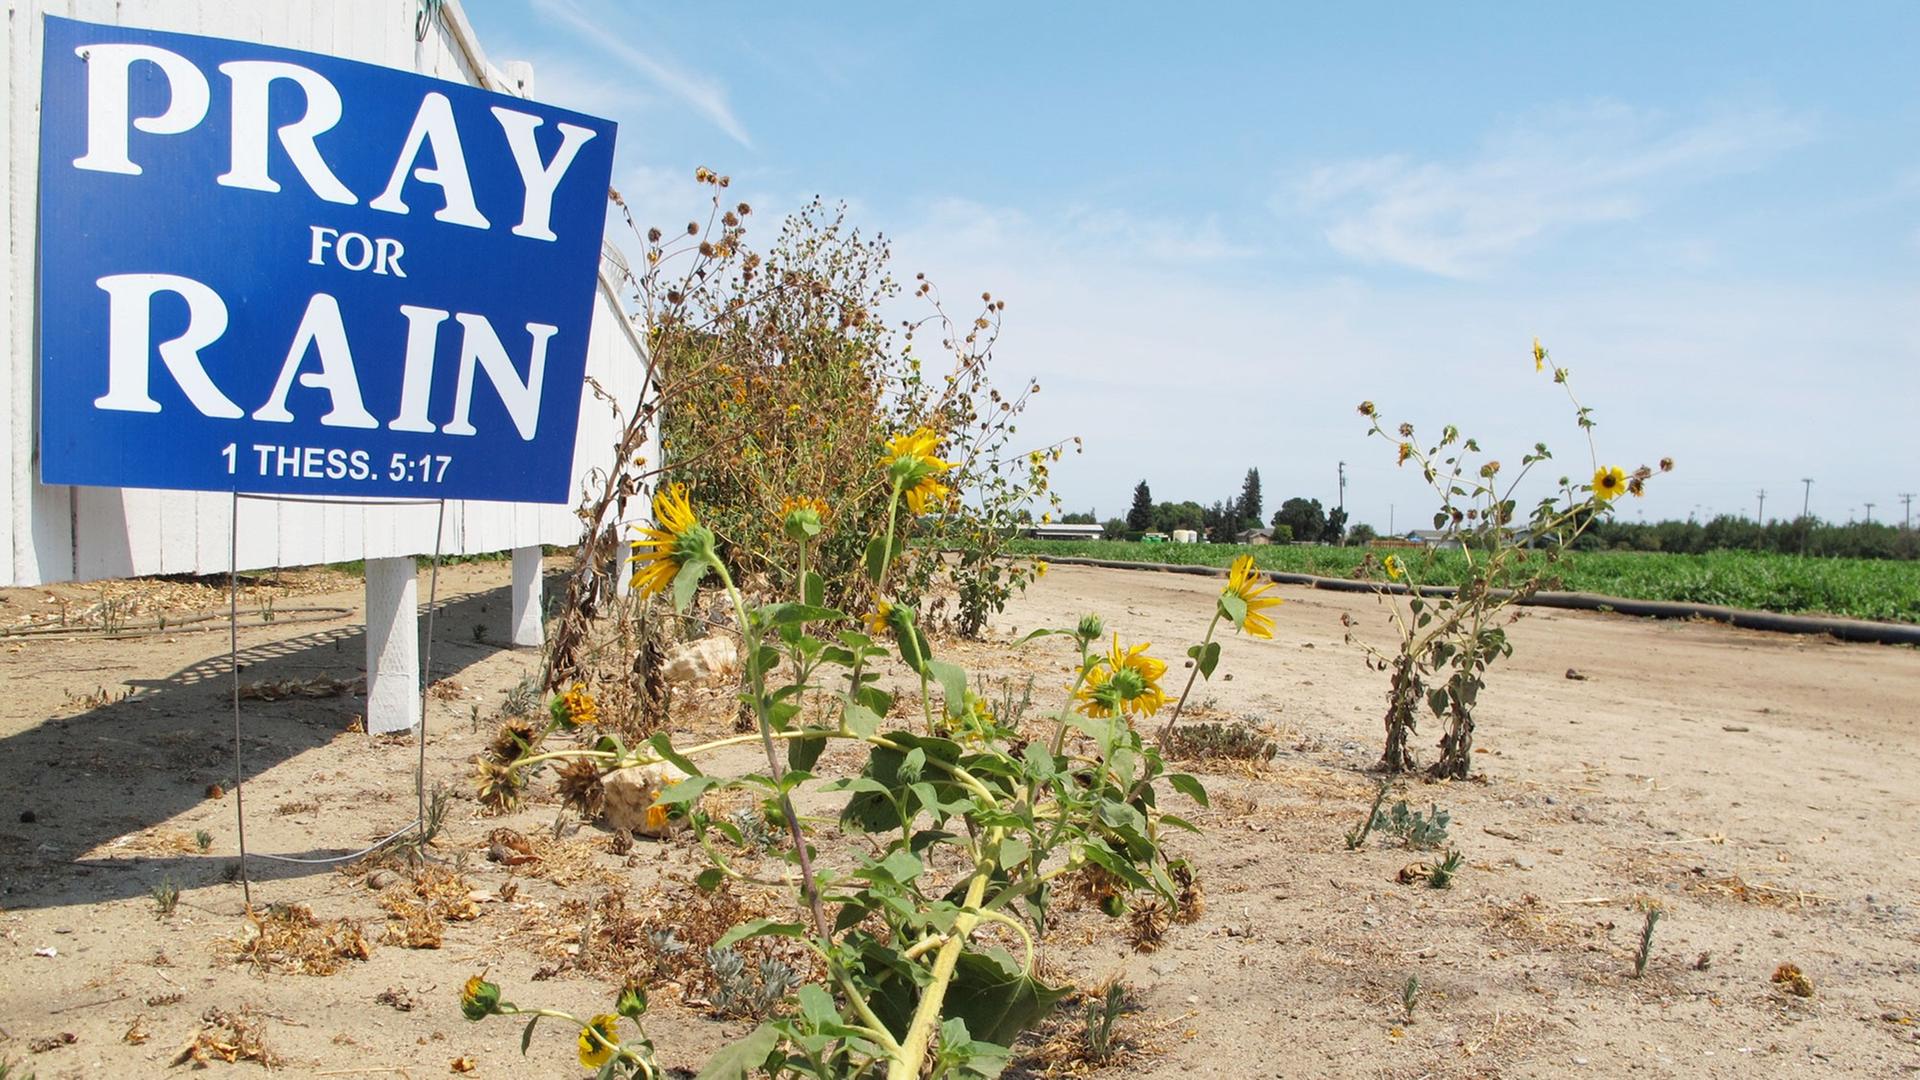 Ein Schild mit der Aufschrift "Pray for Rain" (Bete für Regen) steht am 30.07.2014 im Raum Stockton auf vertrocknetem Boden. Eine Dauer-Dürre trocknet Kalifornien schon seit drei Jahren aus.